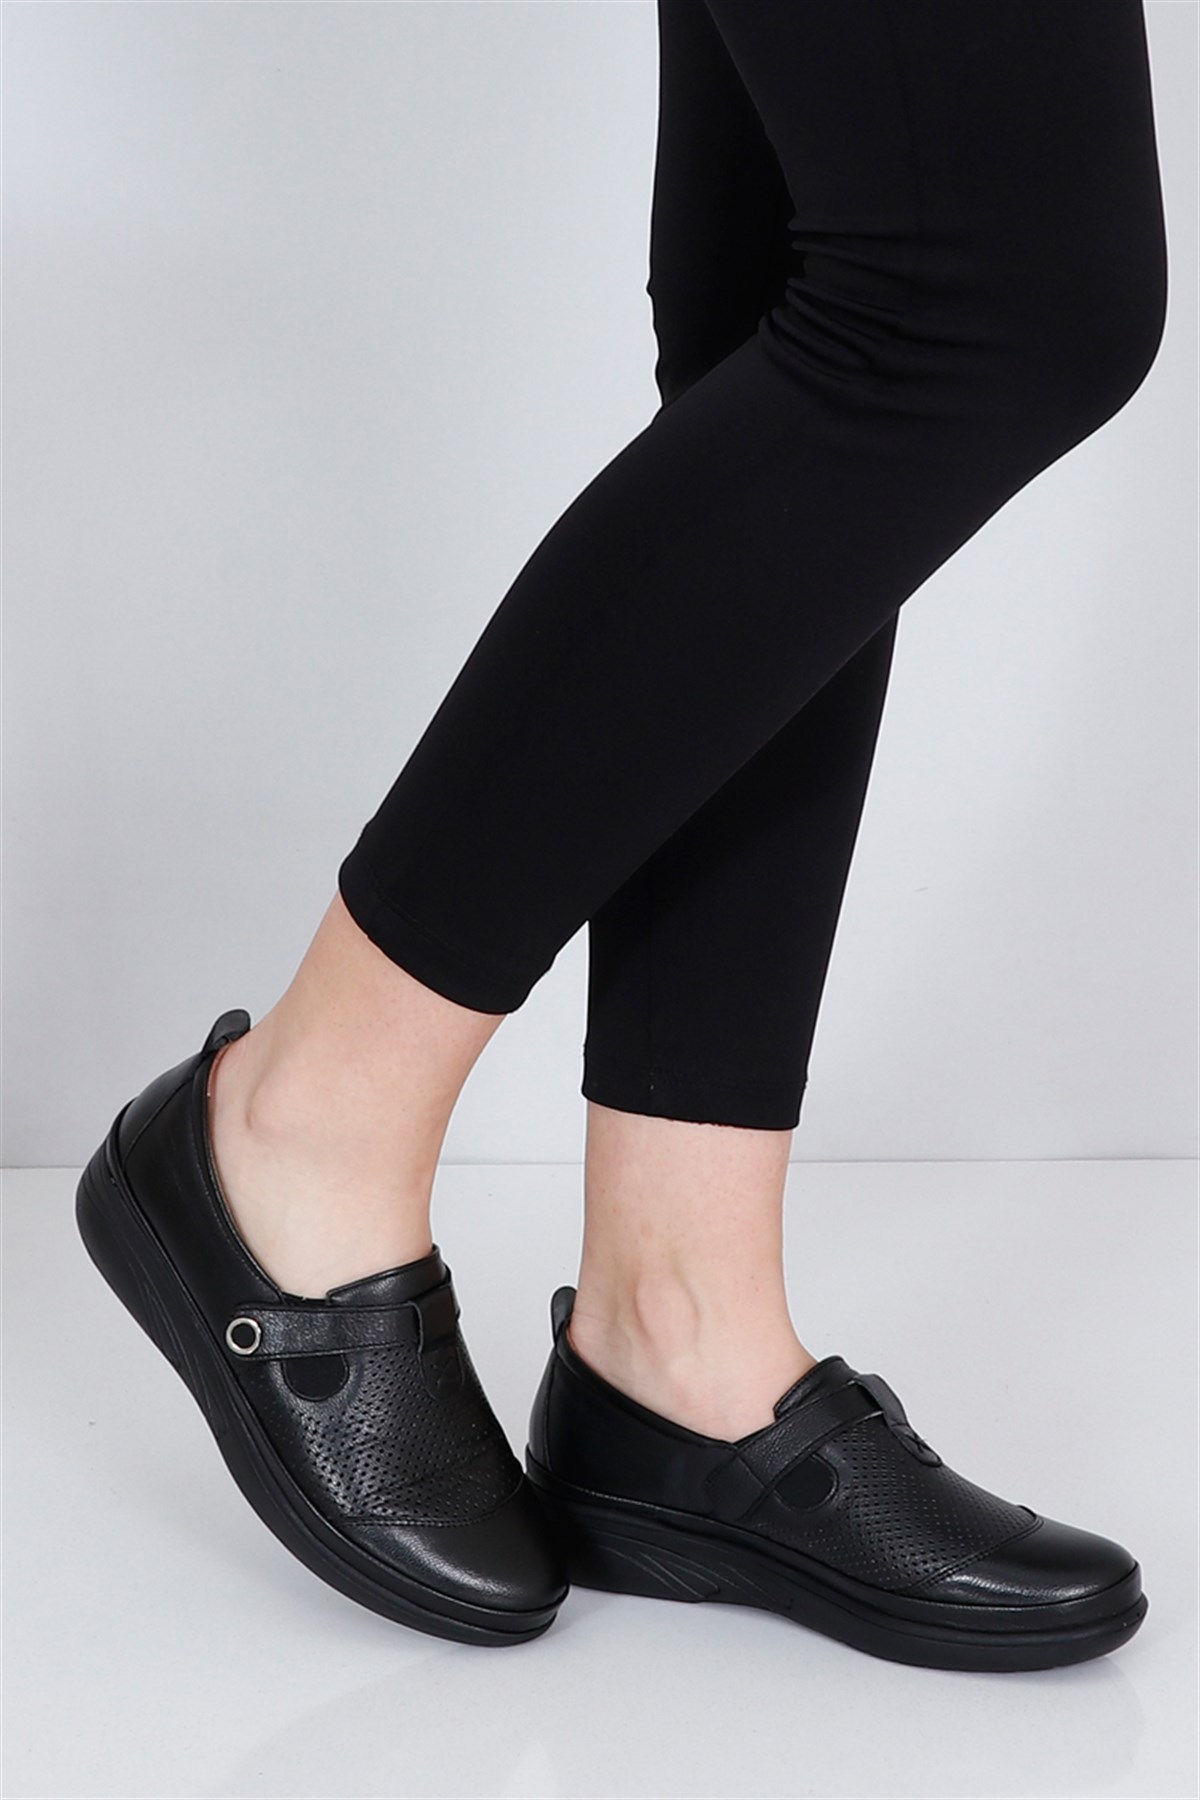 Siyah Ortopedik Dolgu Topuk Kadın Ayakkabı 2023 Fiyatı ve Modelleri